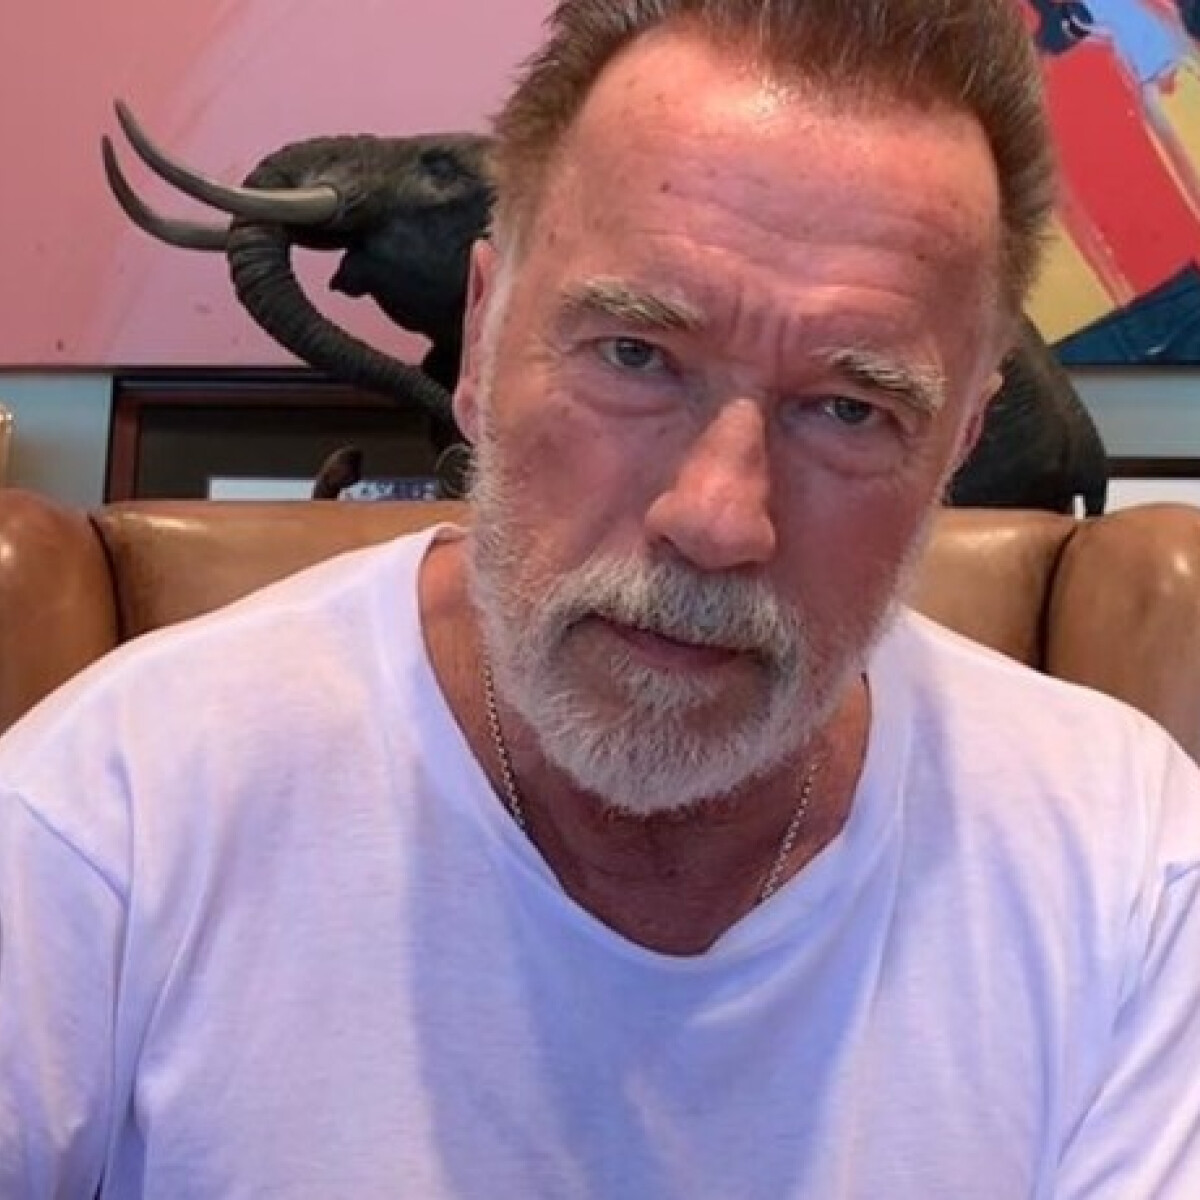 Sosem találnád ki, mi a Terminátor kedvence - most belenézhetsz Arnold Schwarzenegger hűtőjébe